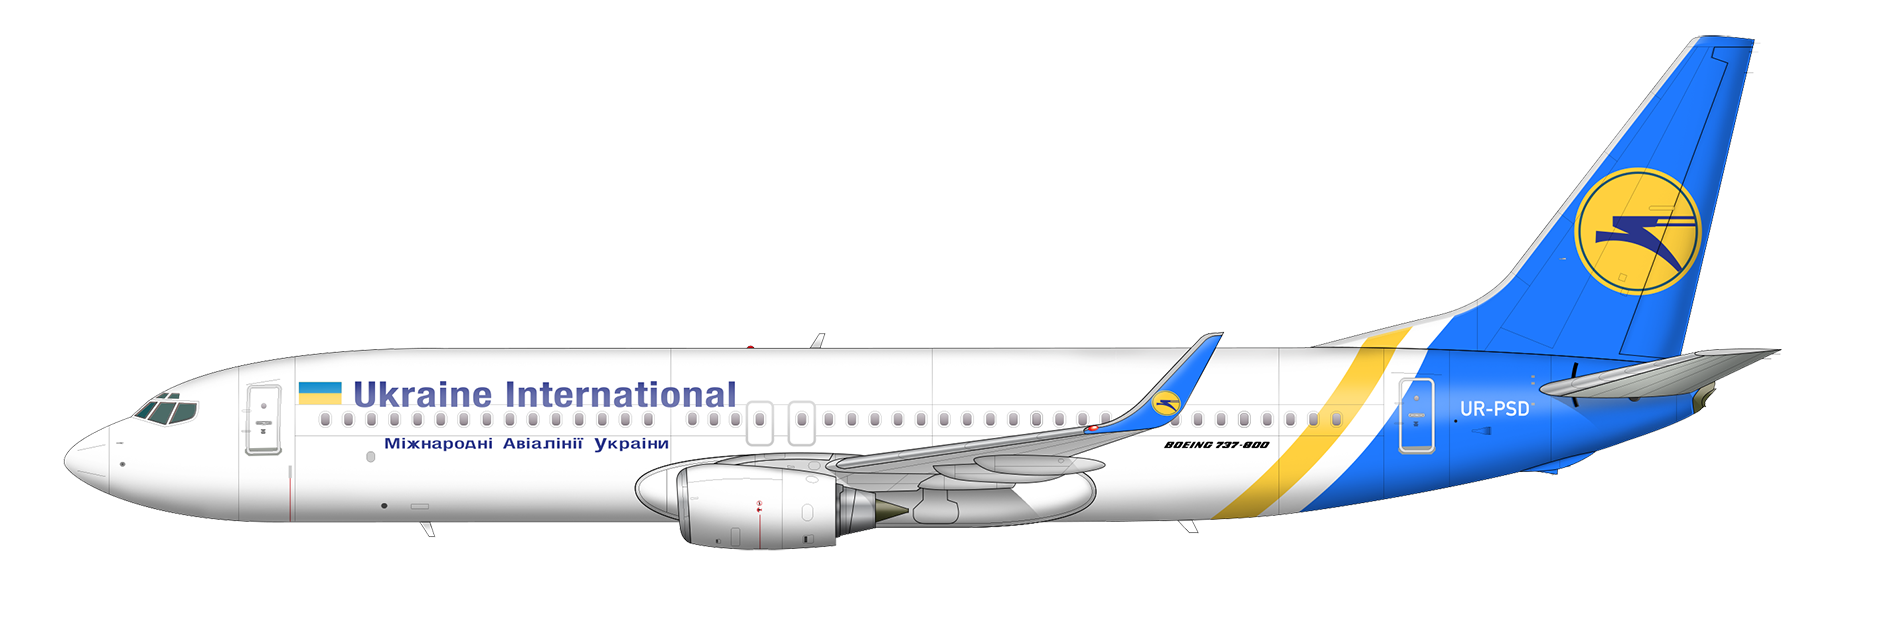 Международные авиалинии украины: багаж, онлайн регистрация, услгуи на борту